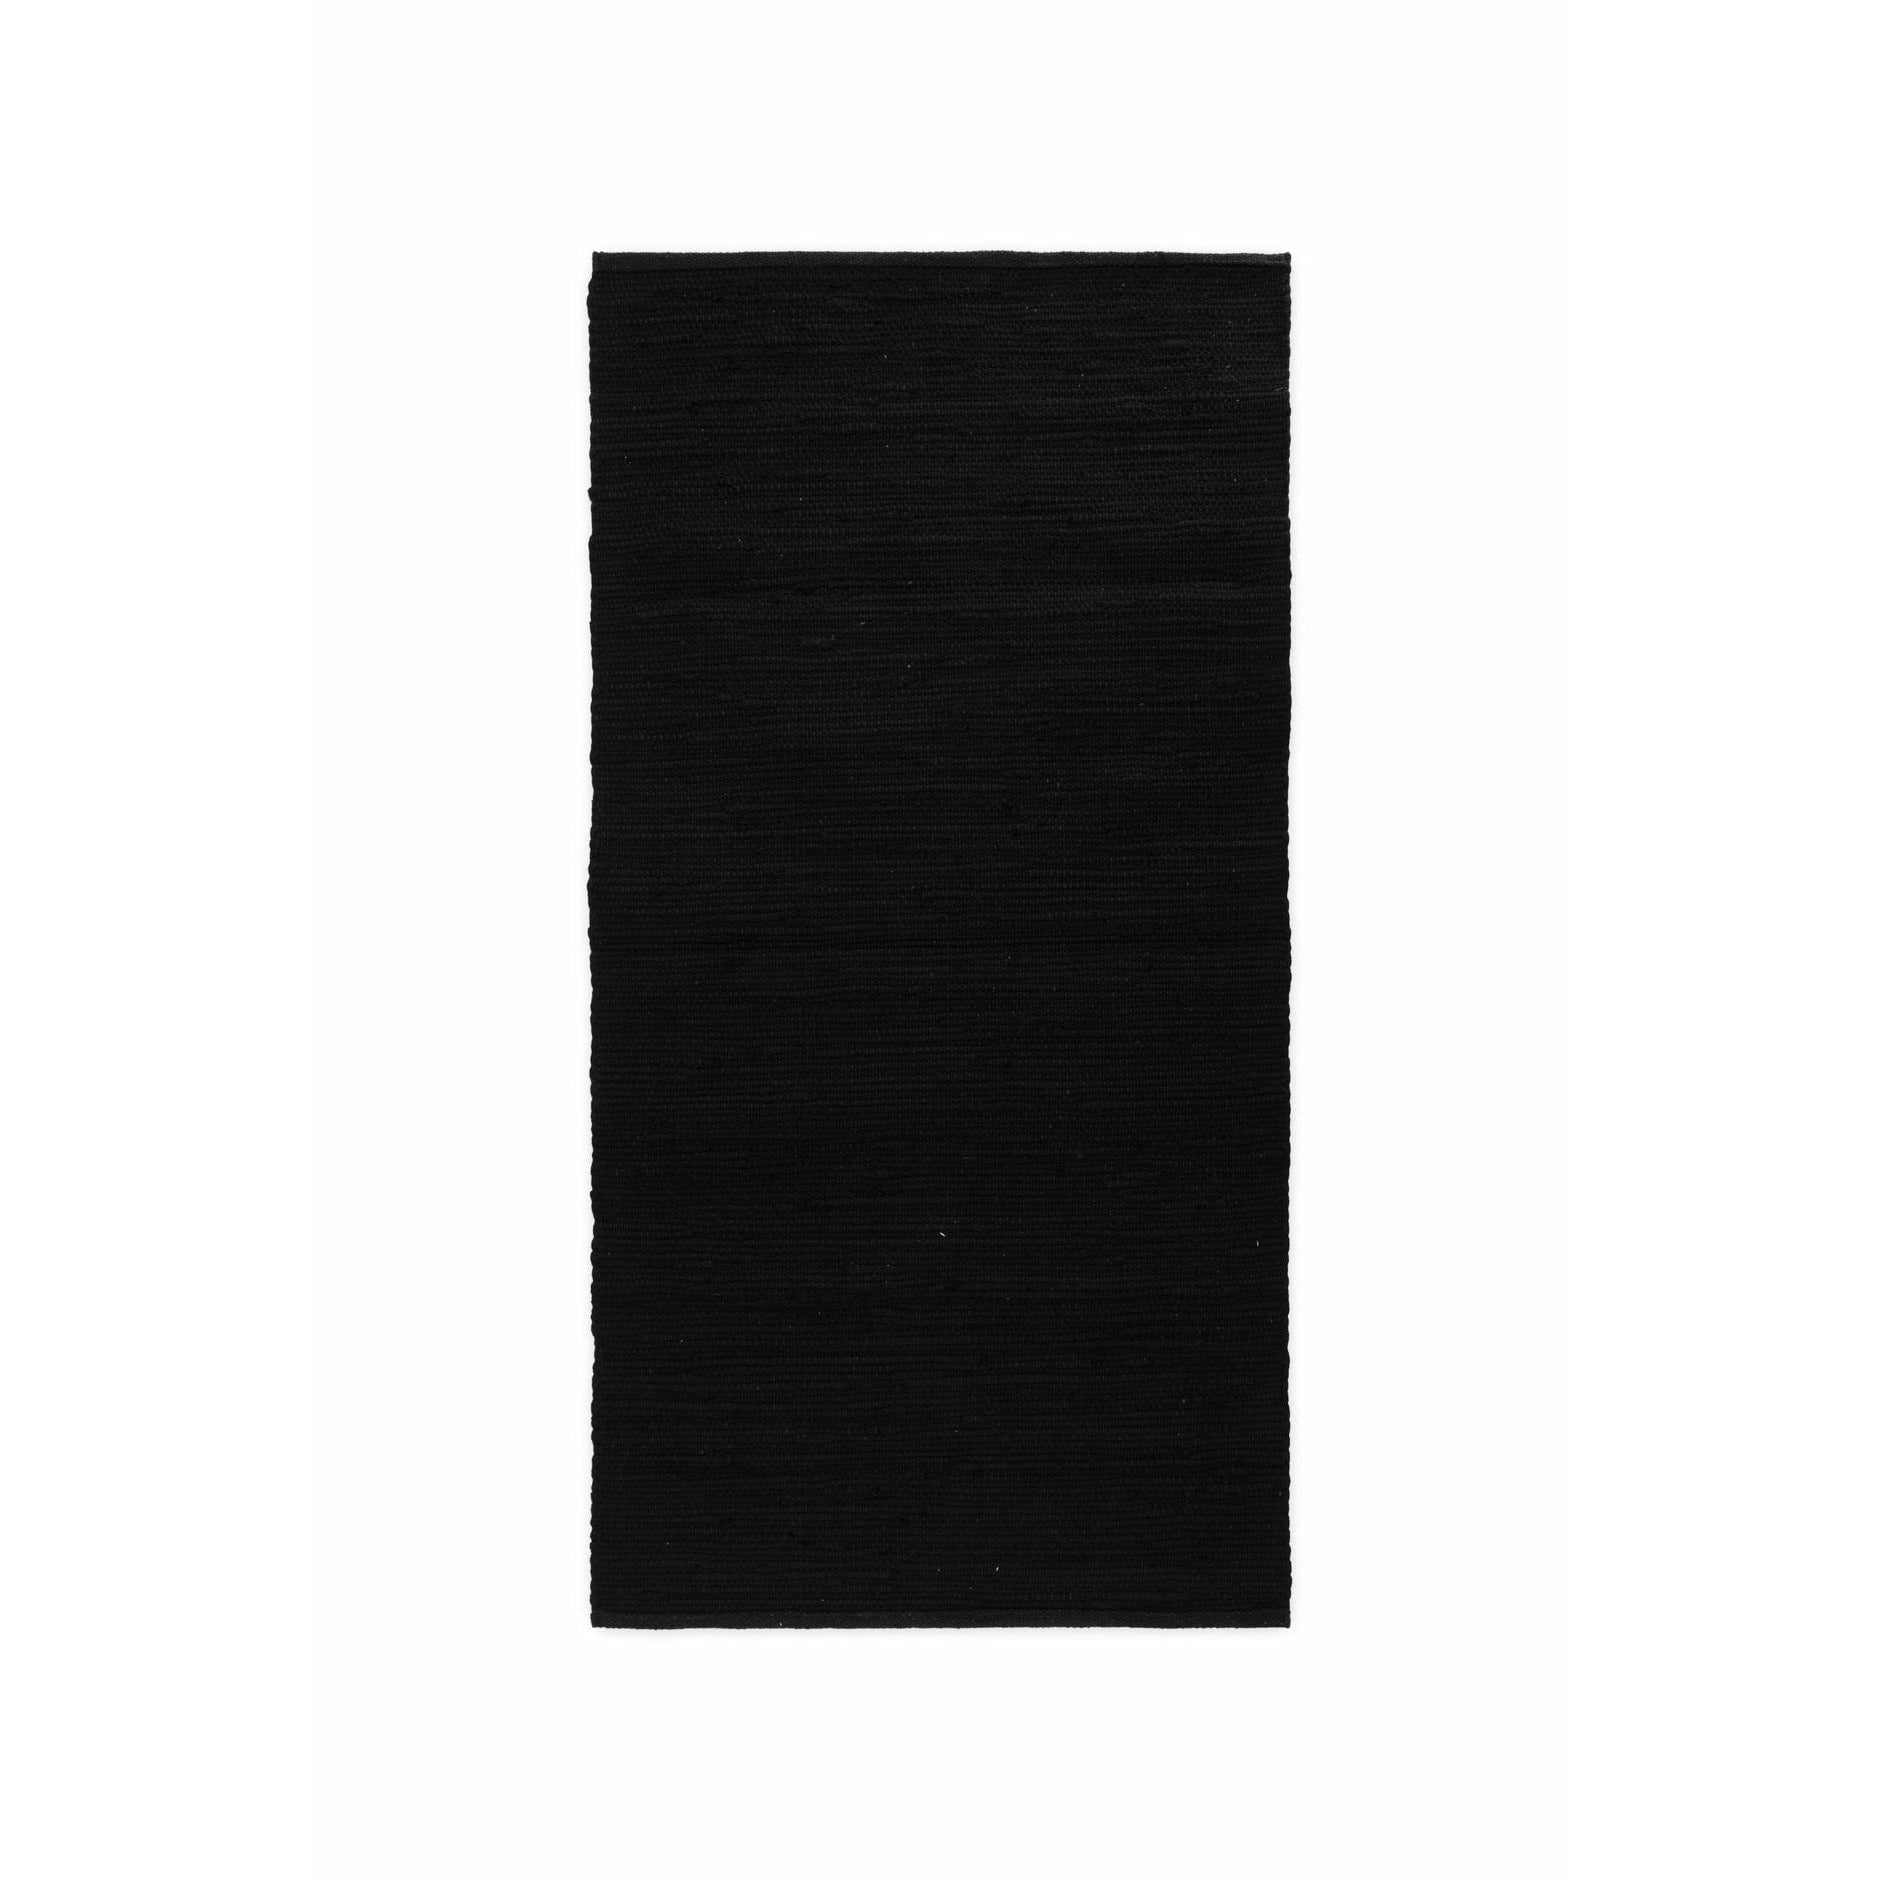 Rug Solid Bomullsmattan svart, 75 x 300 cm